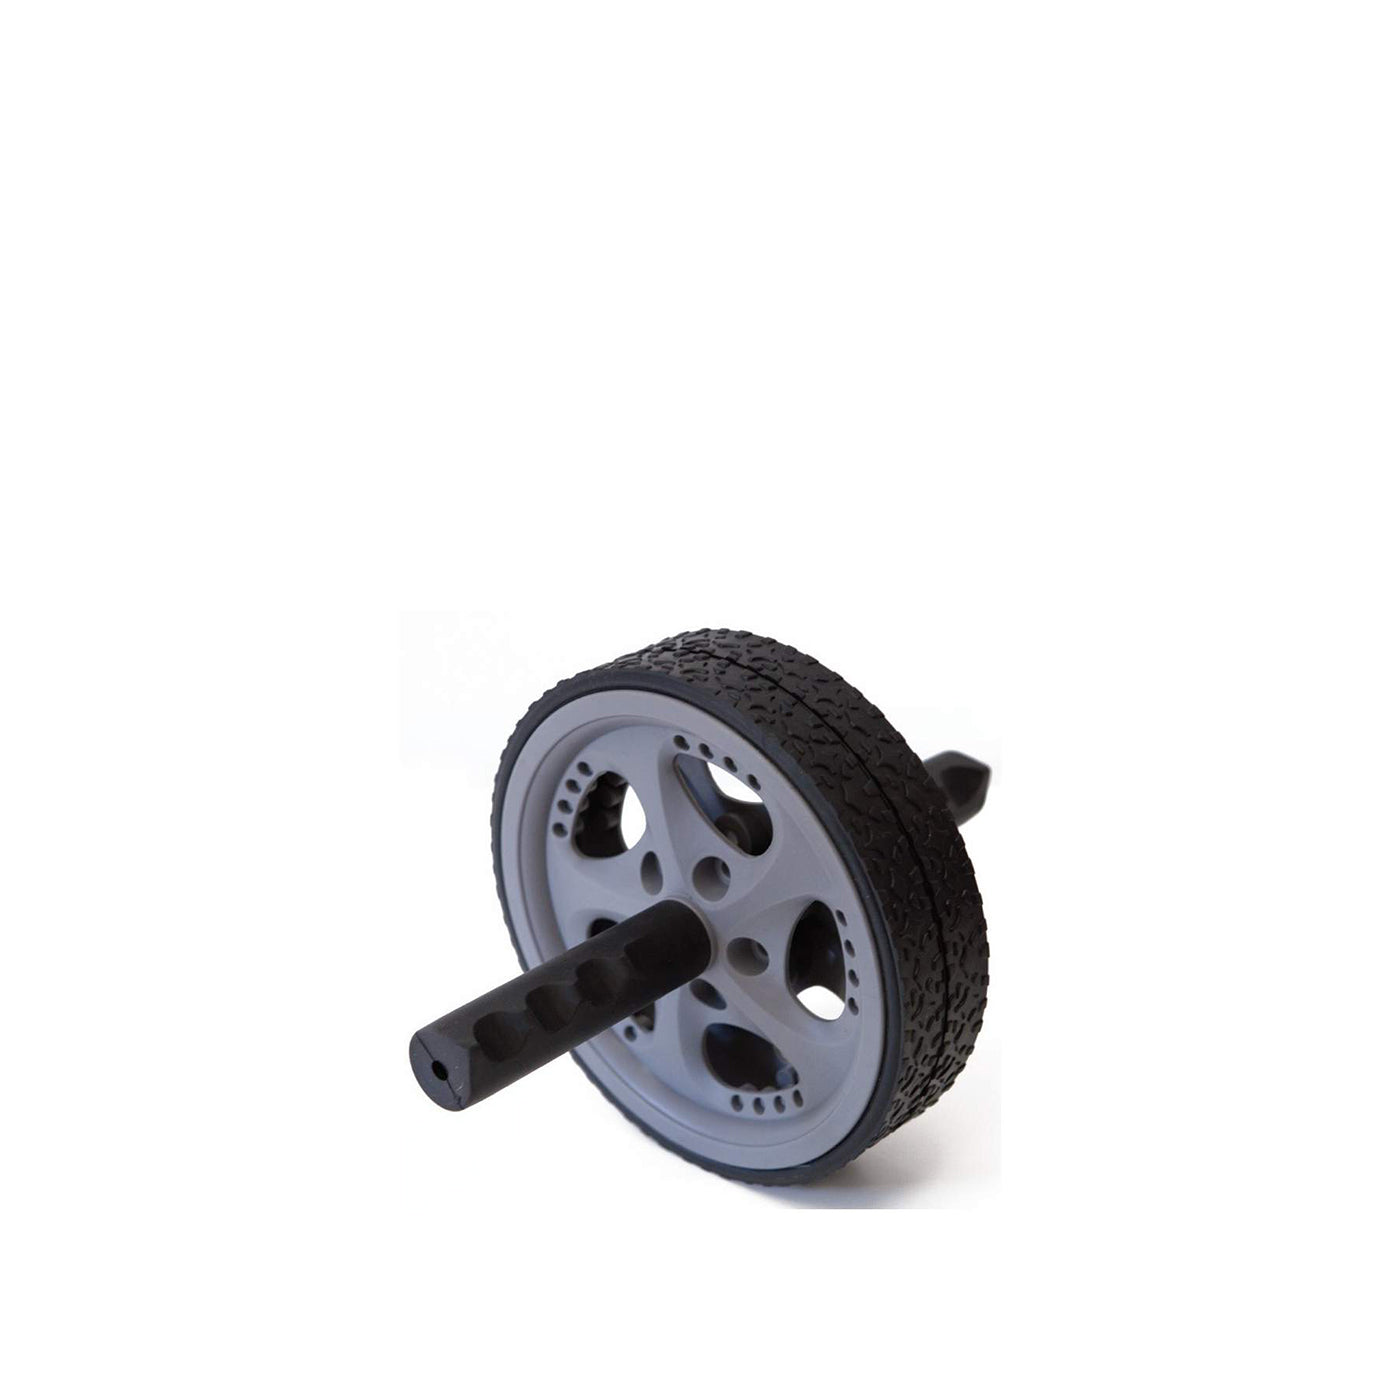 Esta rueda abdominal es ideal para el trabajo de extensiones abdominales. Fabricada en plástico, con estructura de acero.